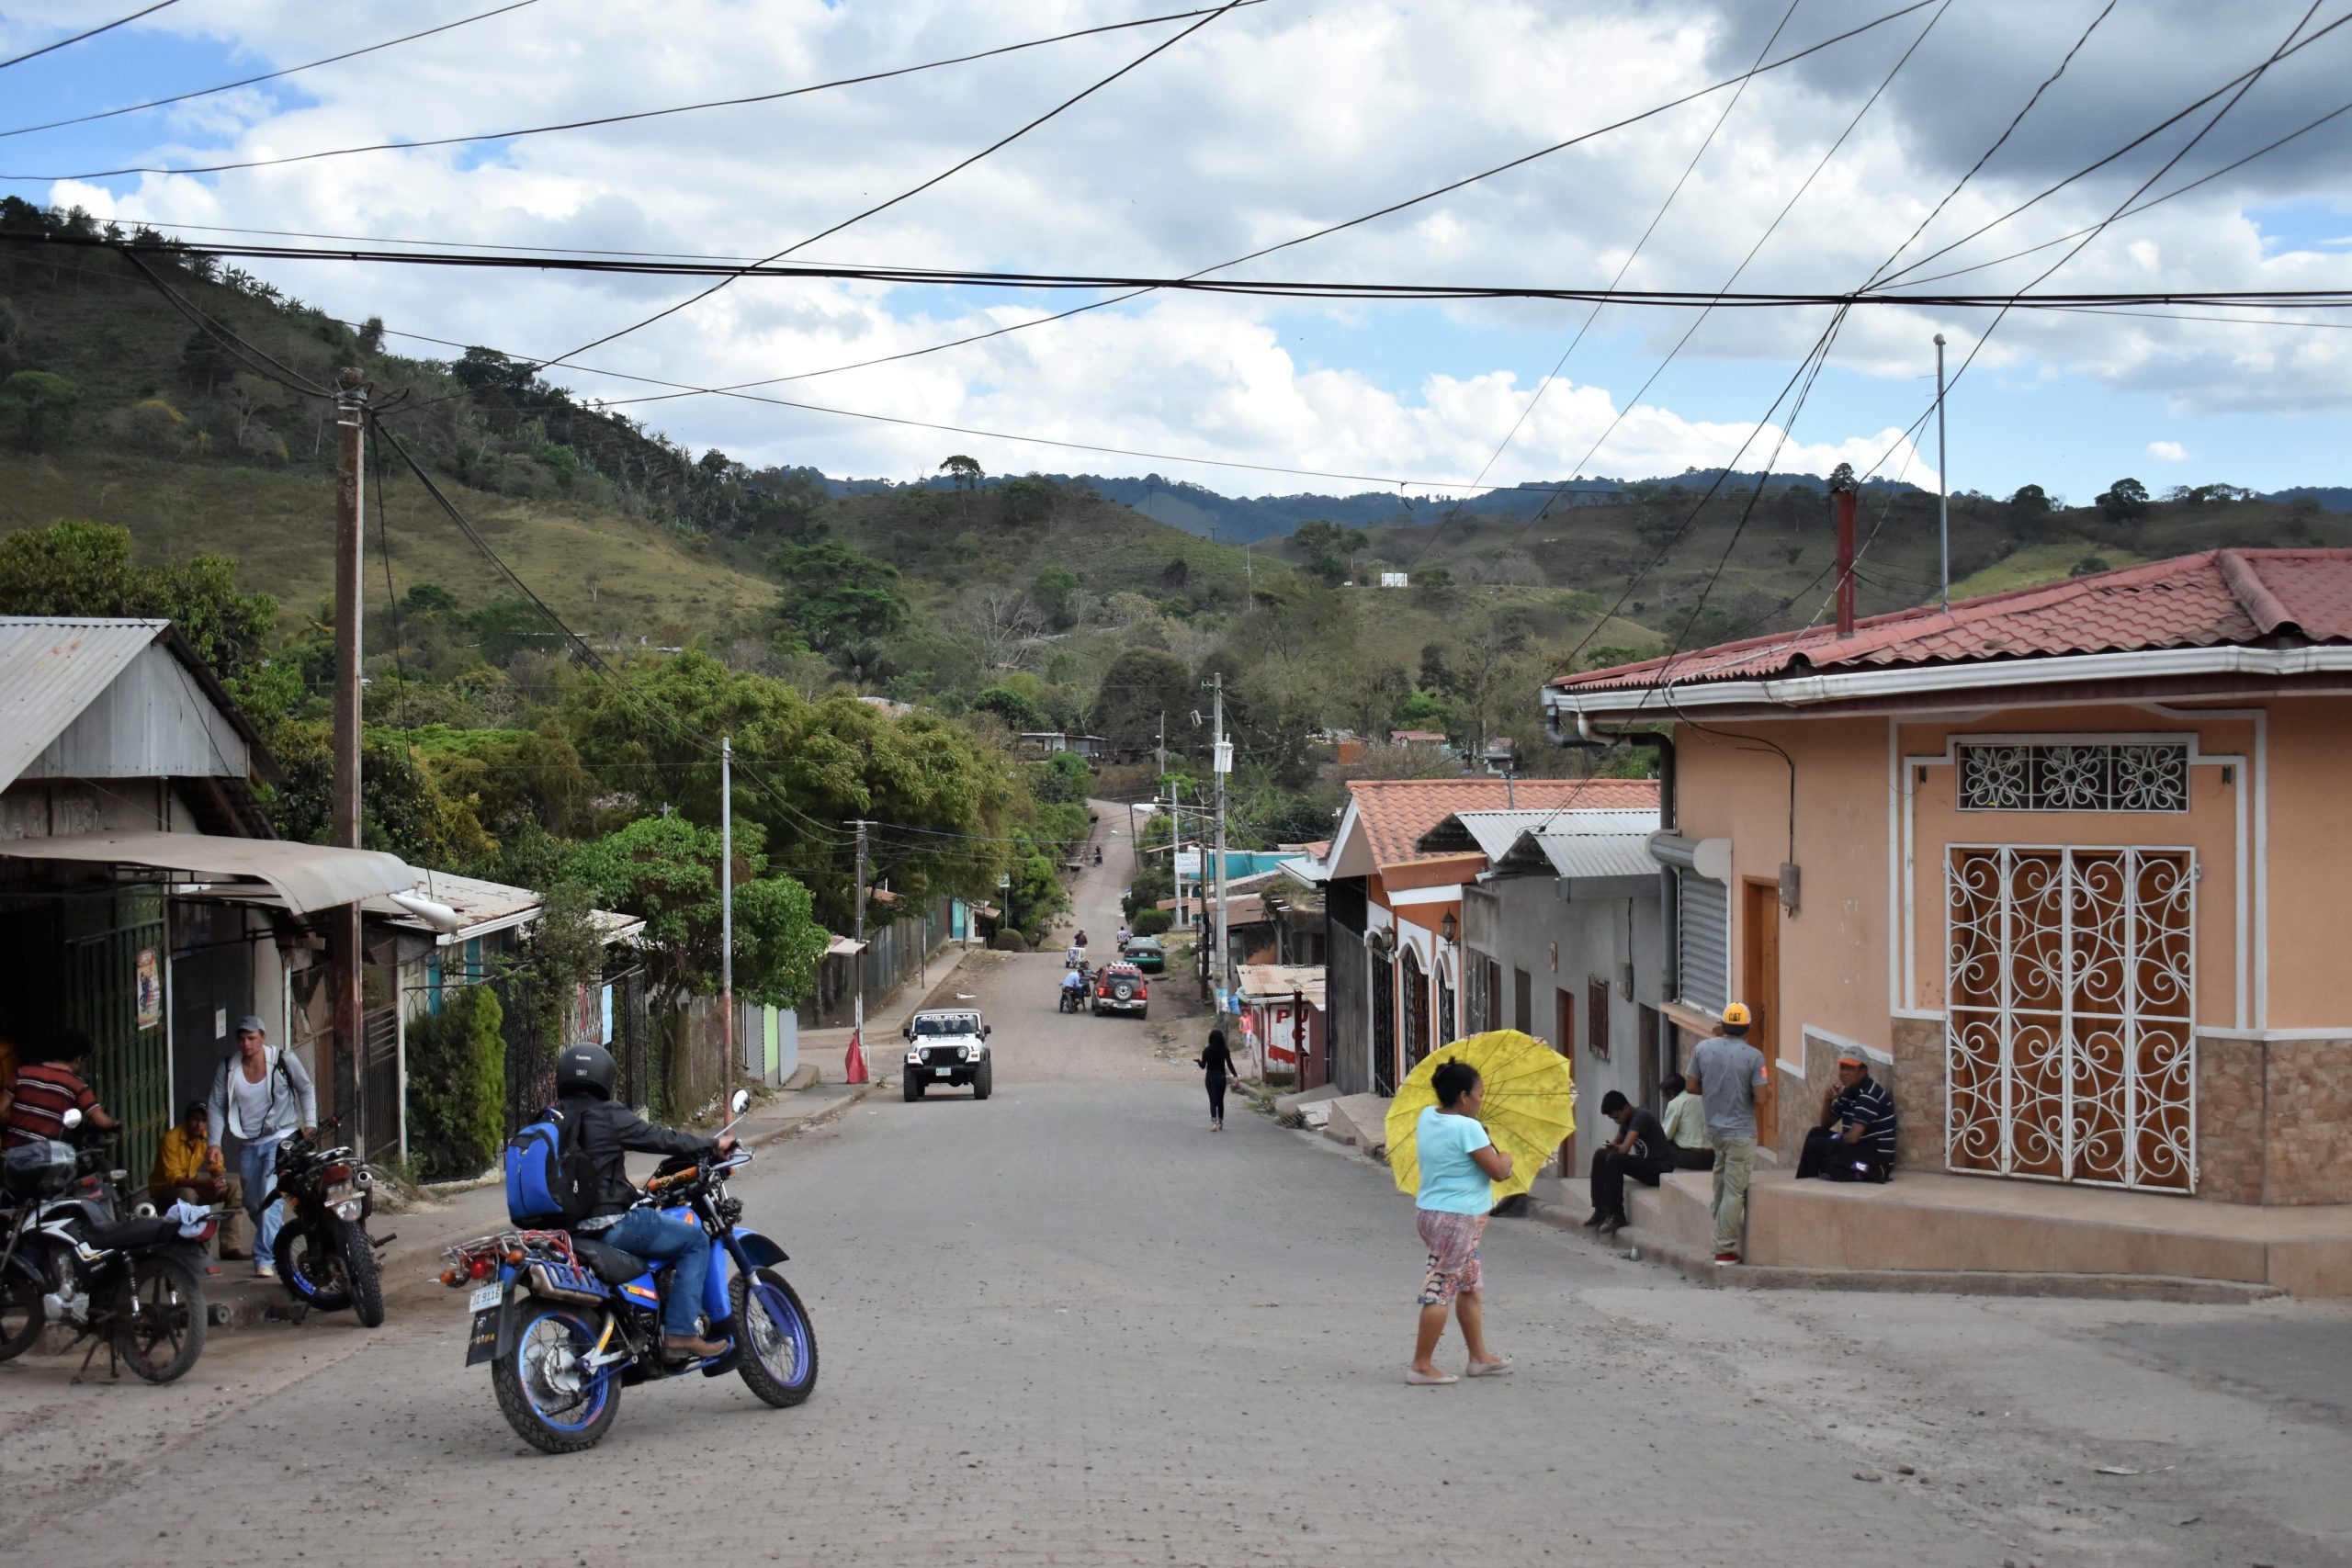 A street scene in San Sebastián de Yalí, Nicaragua